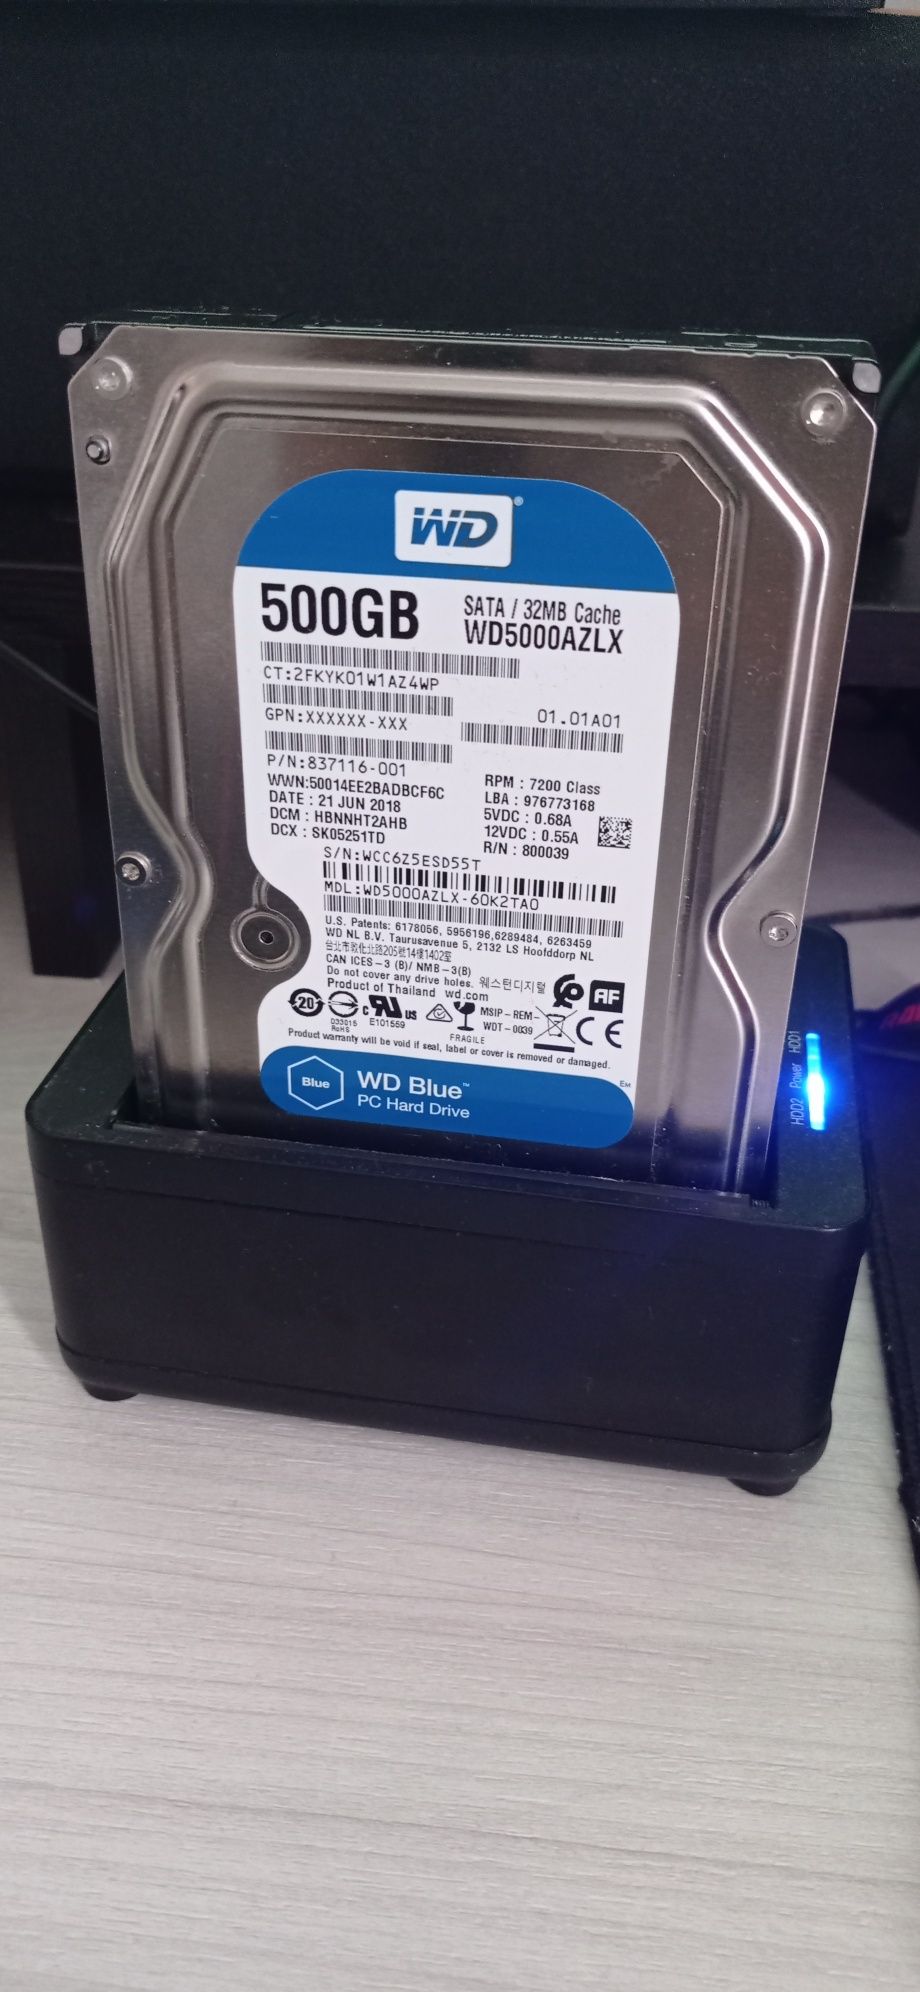 Жорсткий диск Western Digital WD5000AZLX на 500 GB  (є тест)